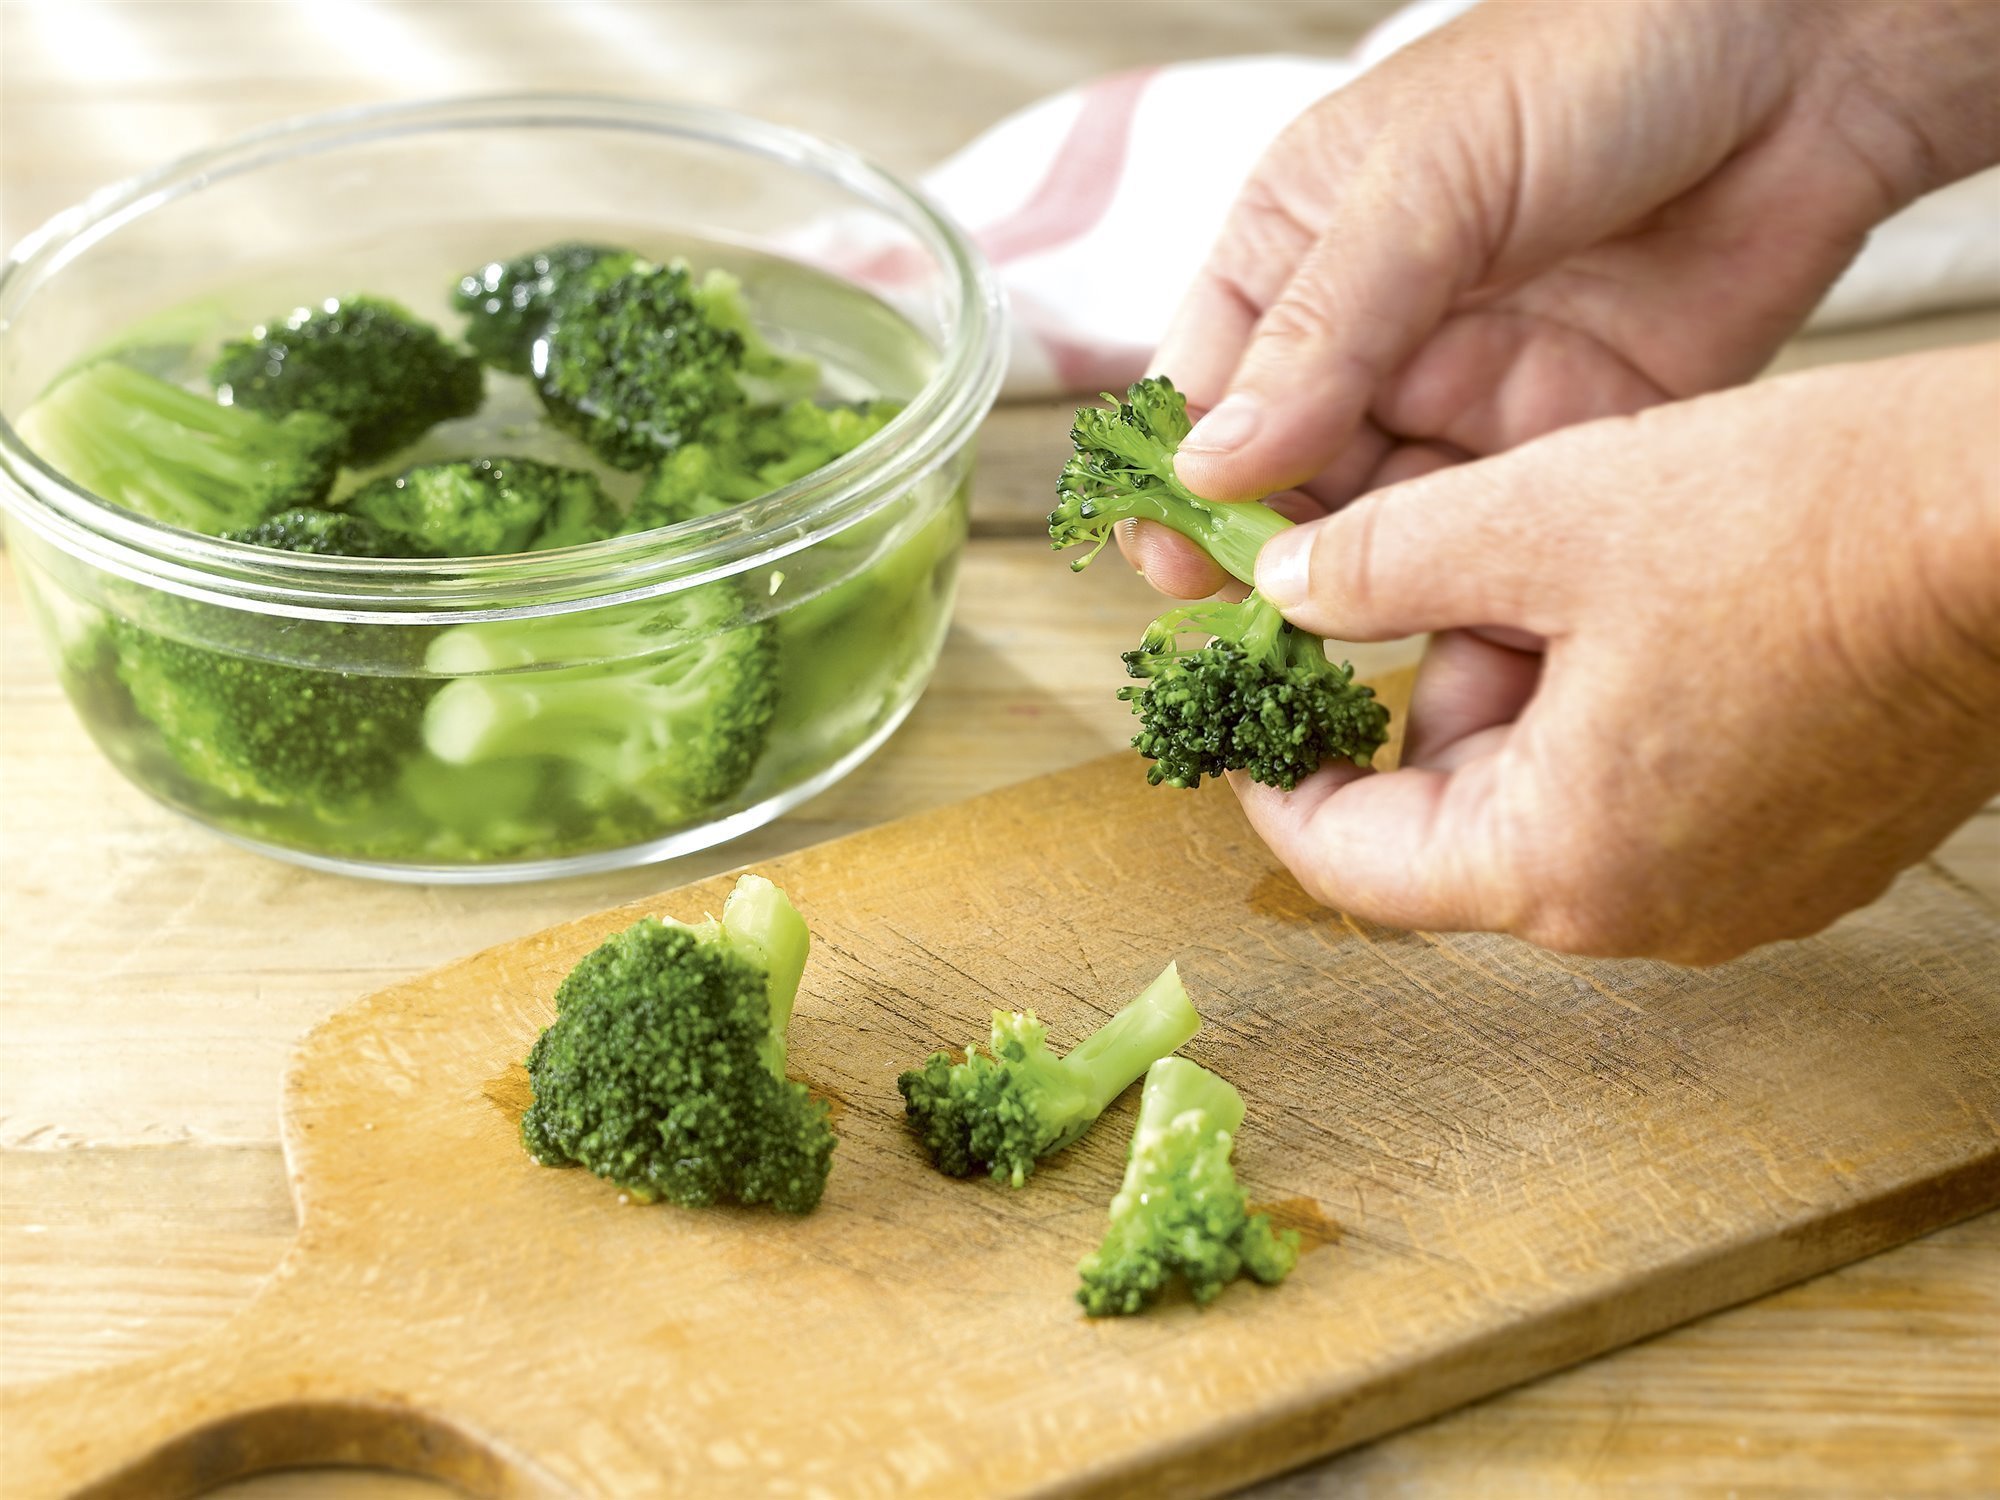 4. Cuece el brócoli